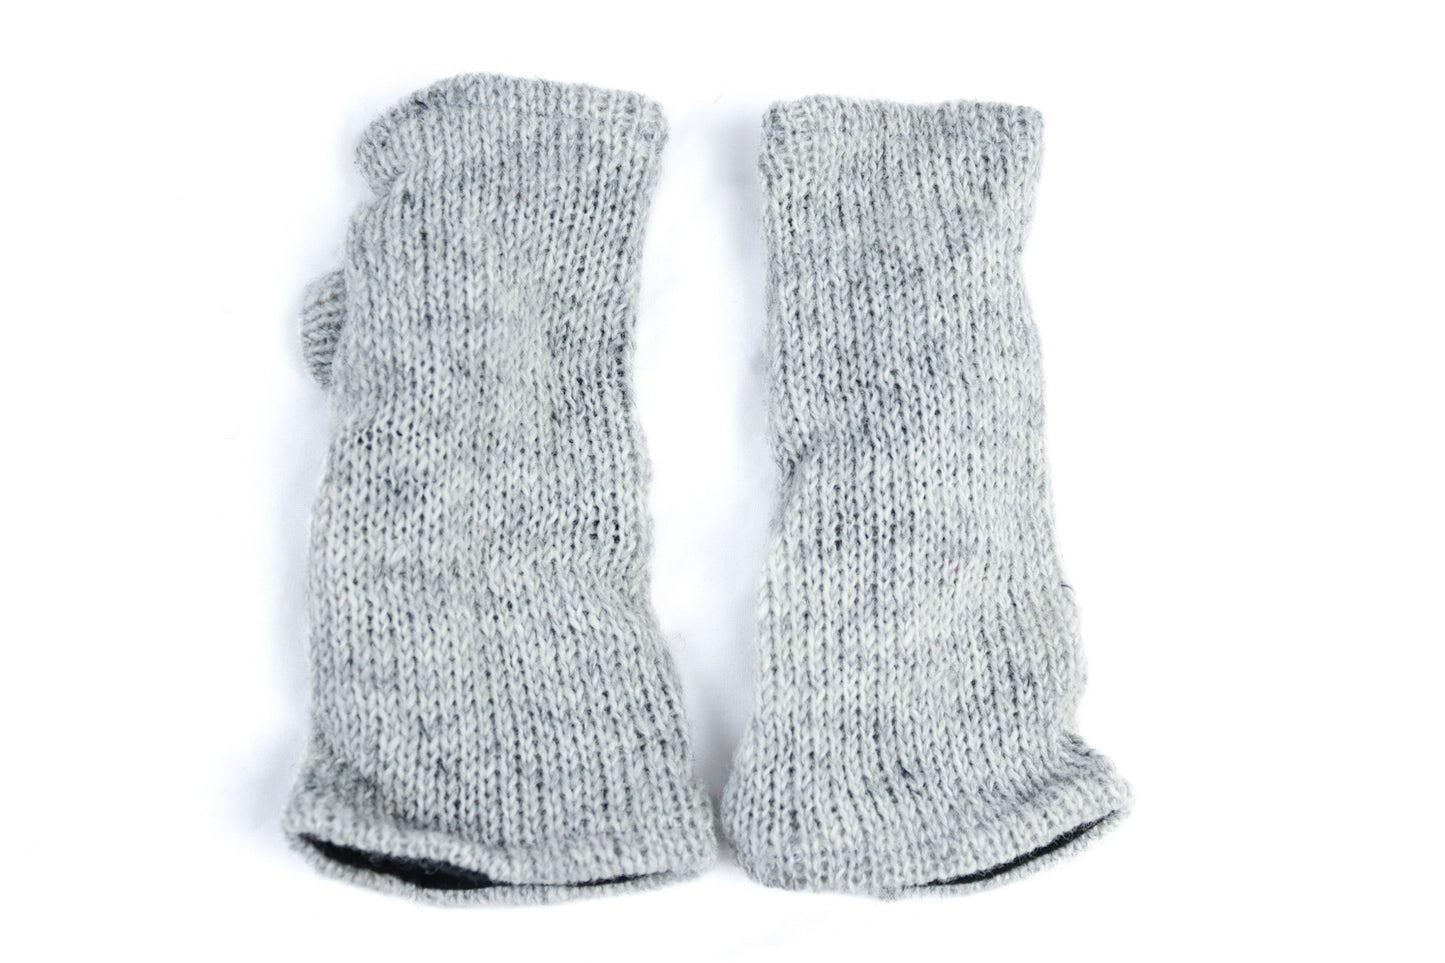 Chauffe-poignets tricotés doublés de polaire - Gris clair